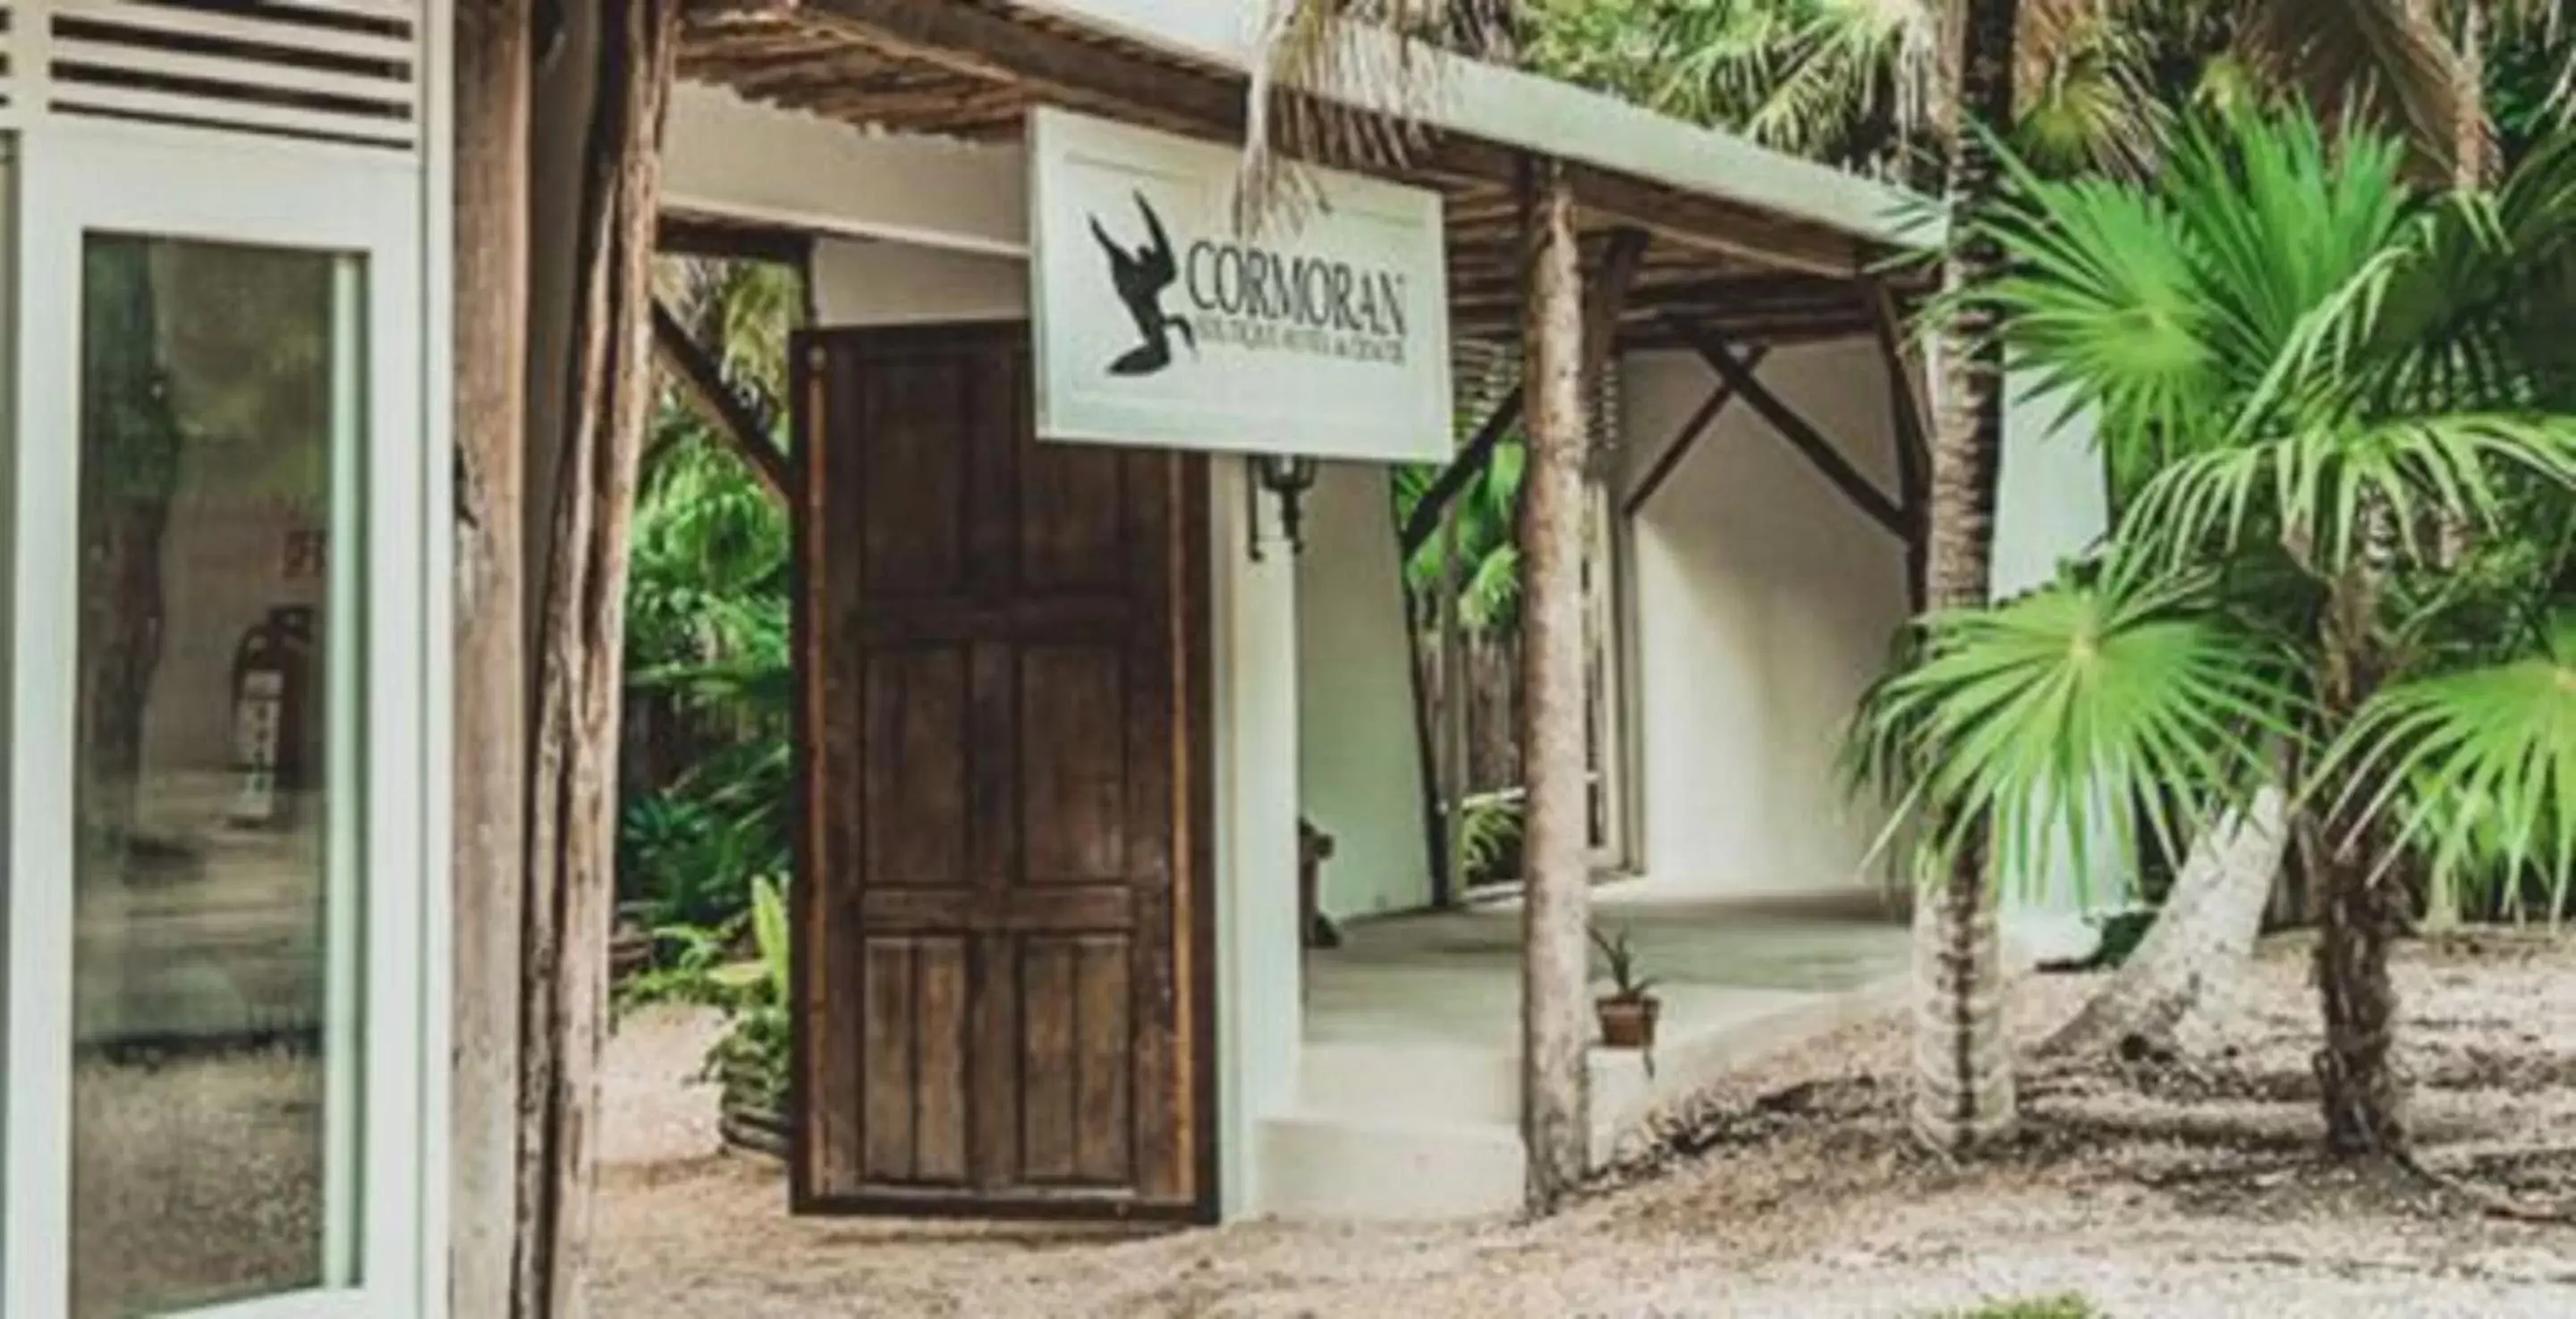 Property building in Cormoran Boutique Hotel & Private Cenote Tulum